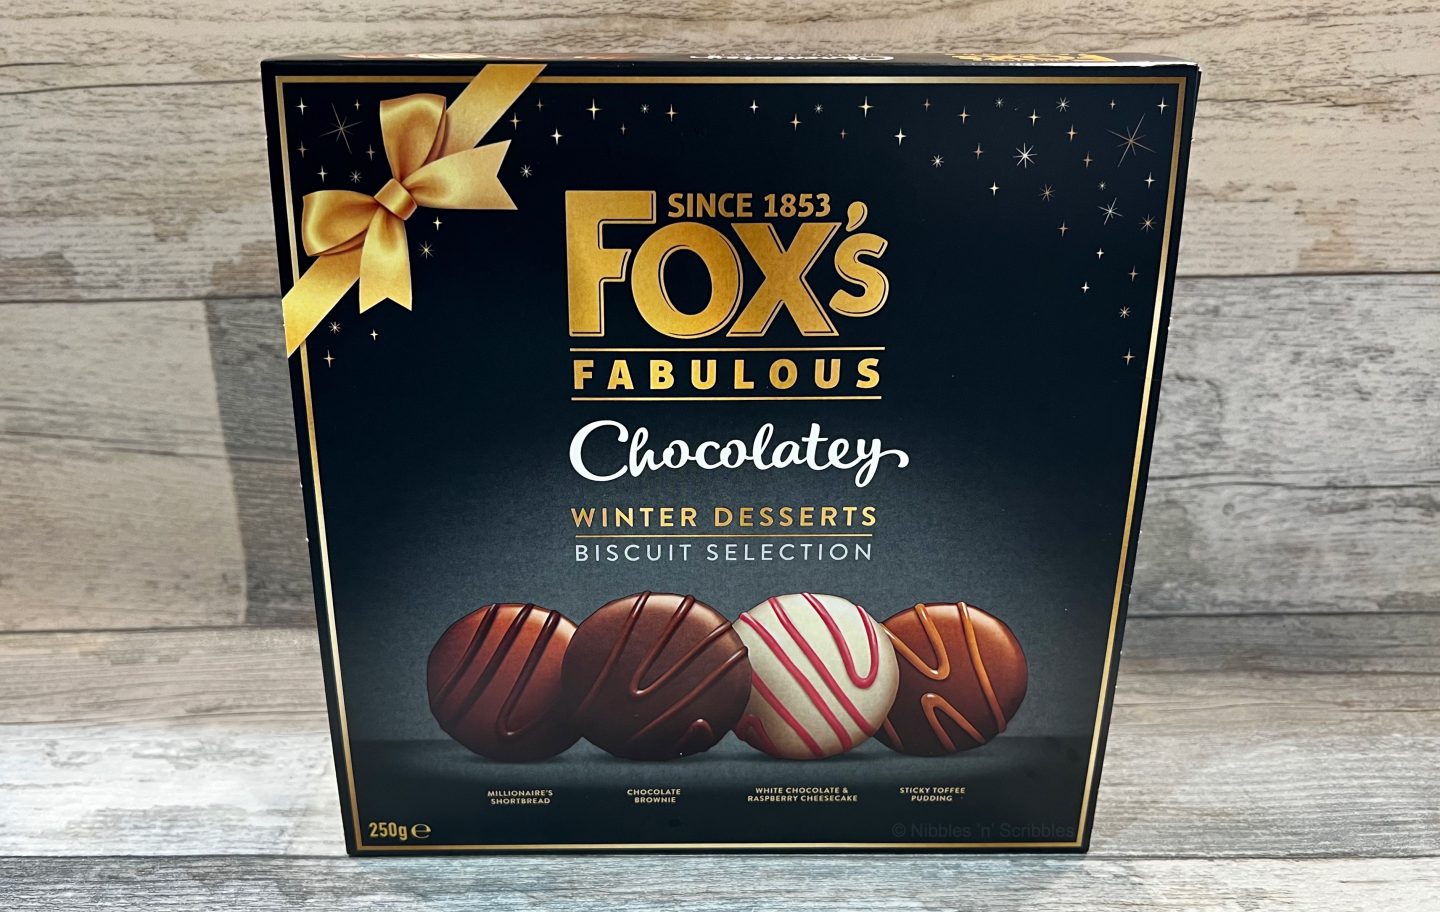 Fox’s Winter Desserts Biscuits